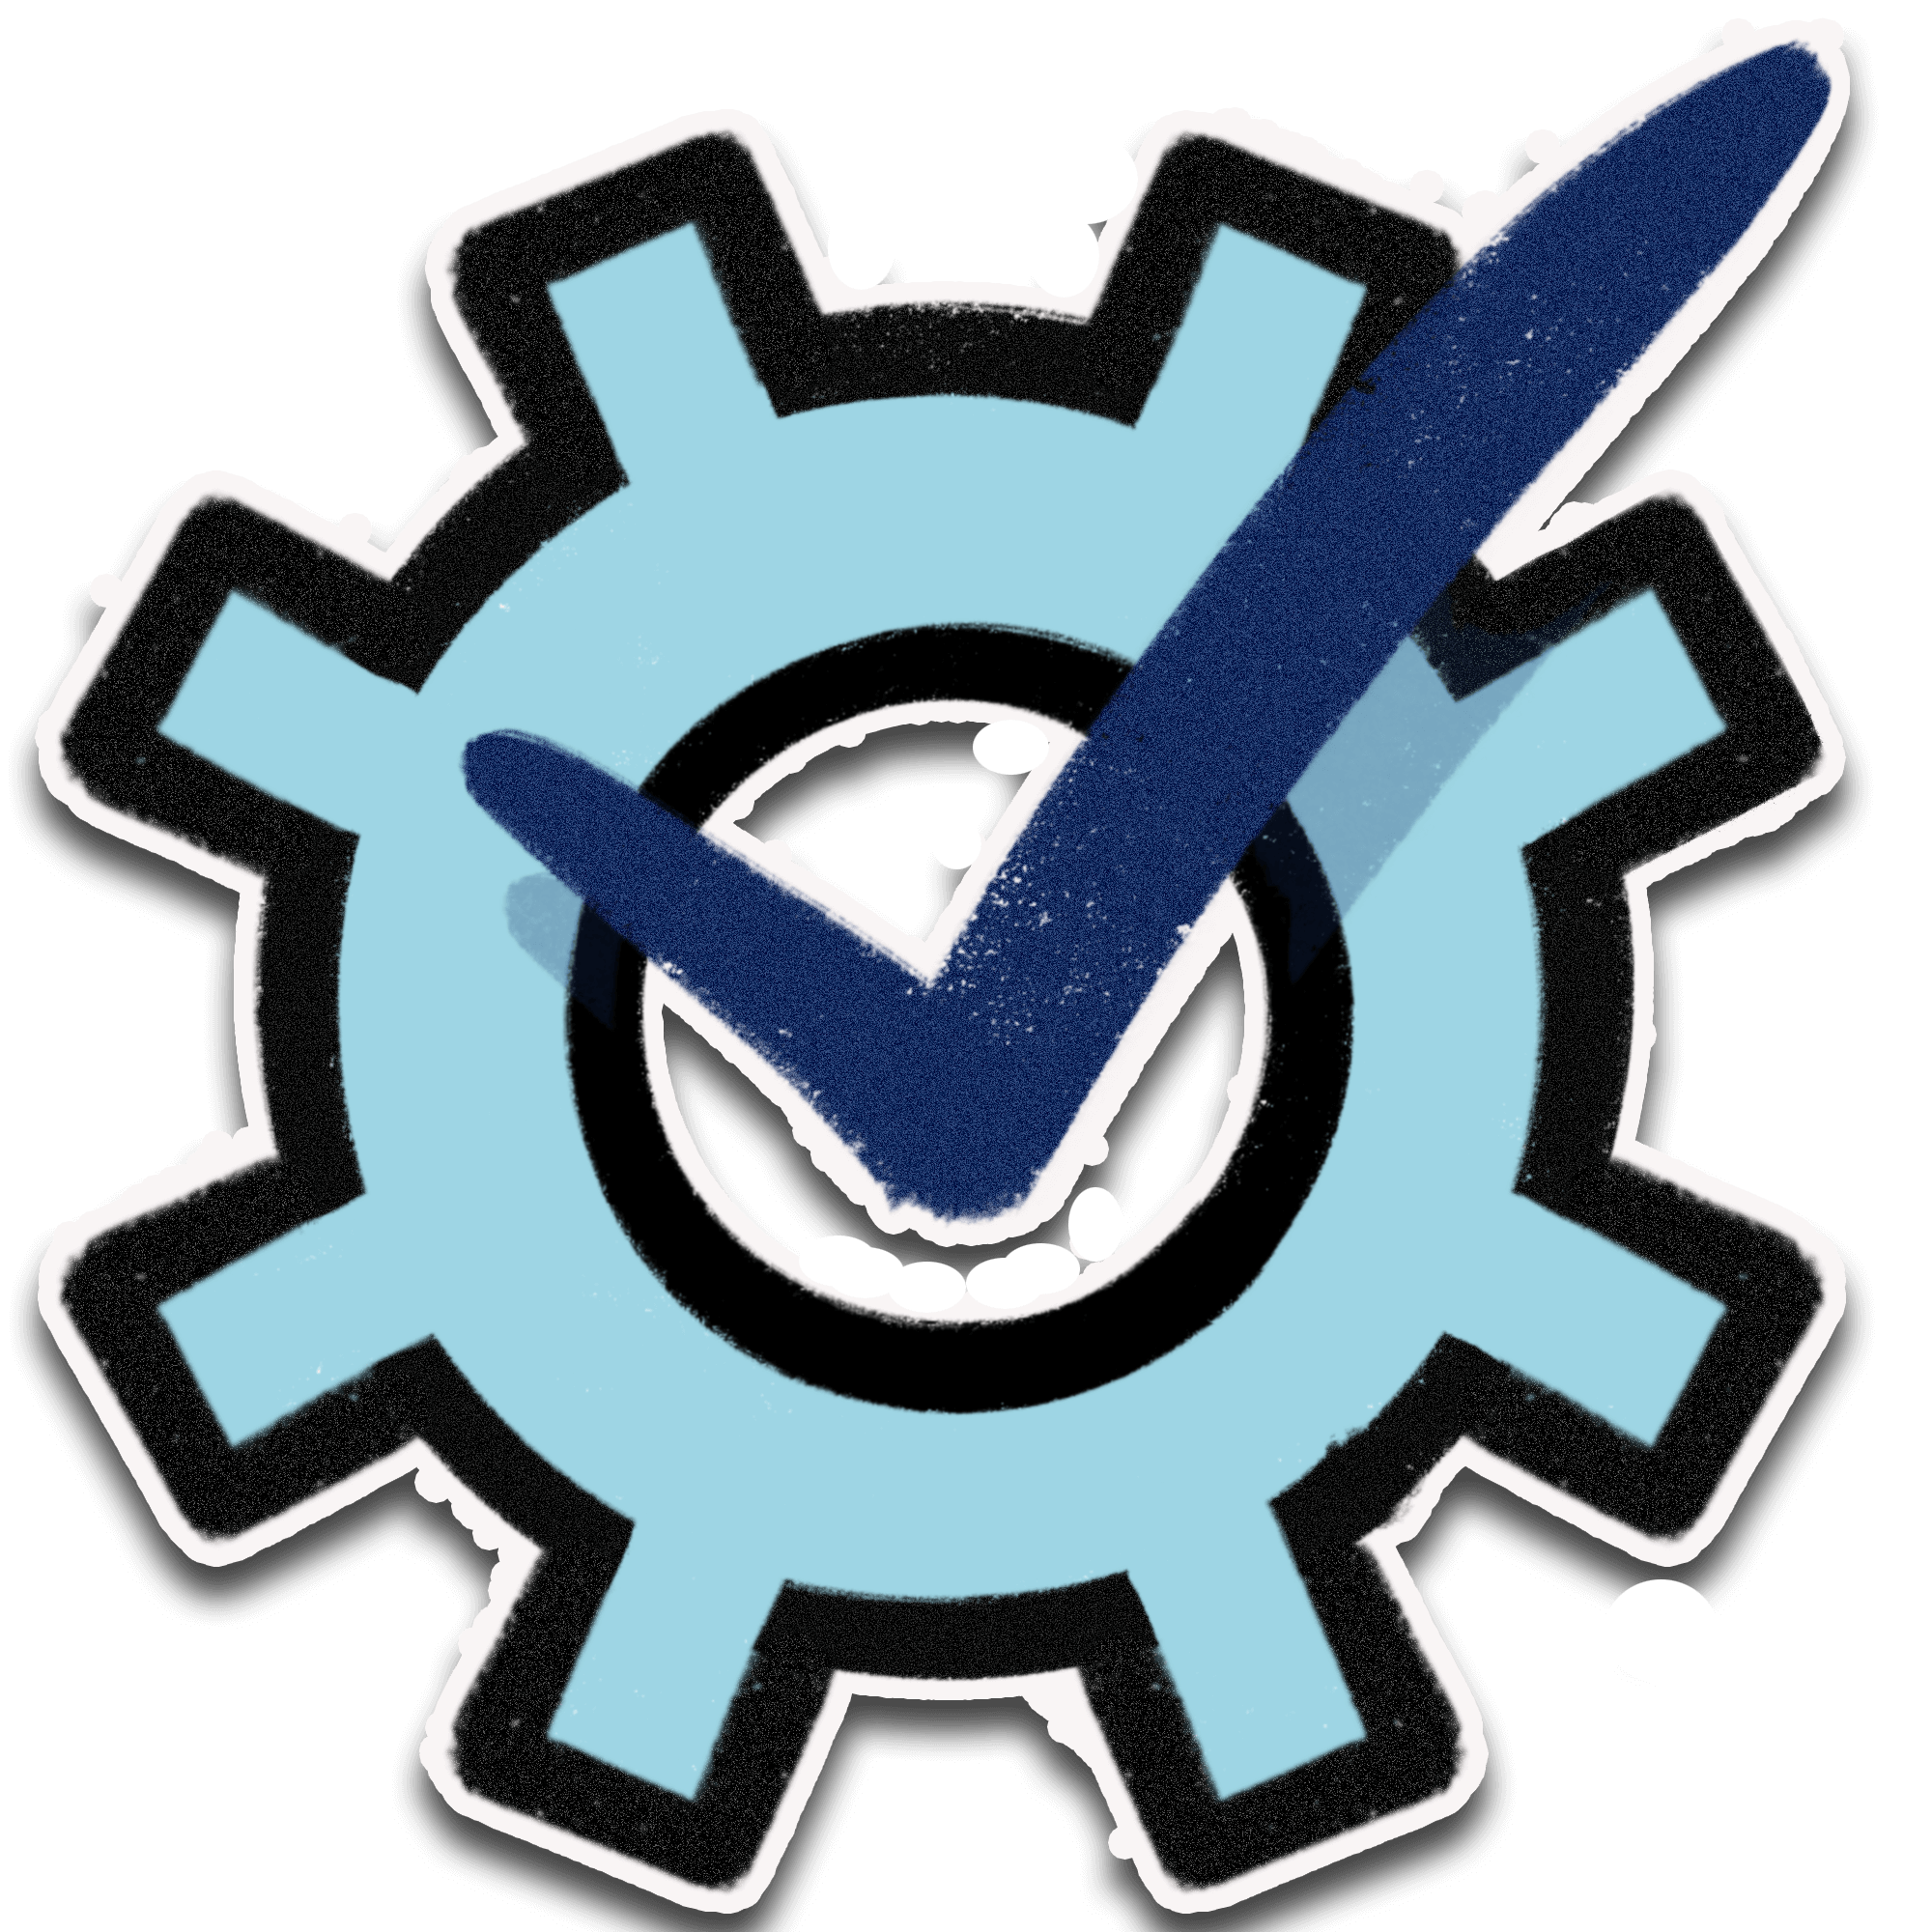 Tech logo